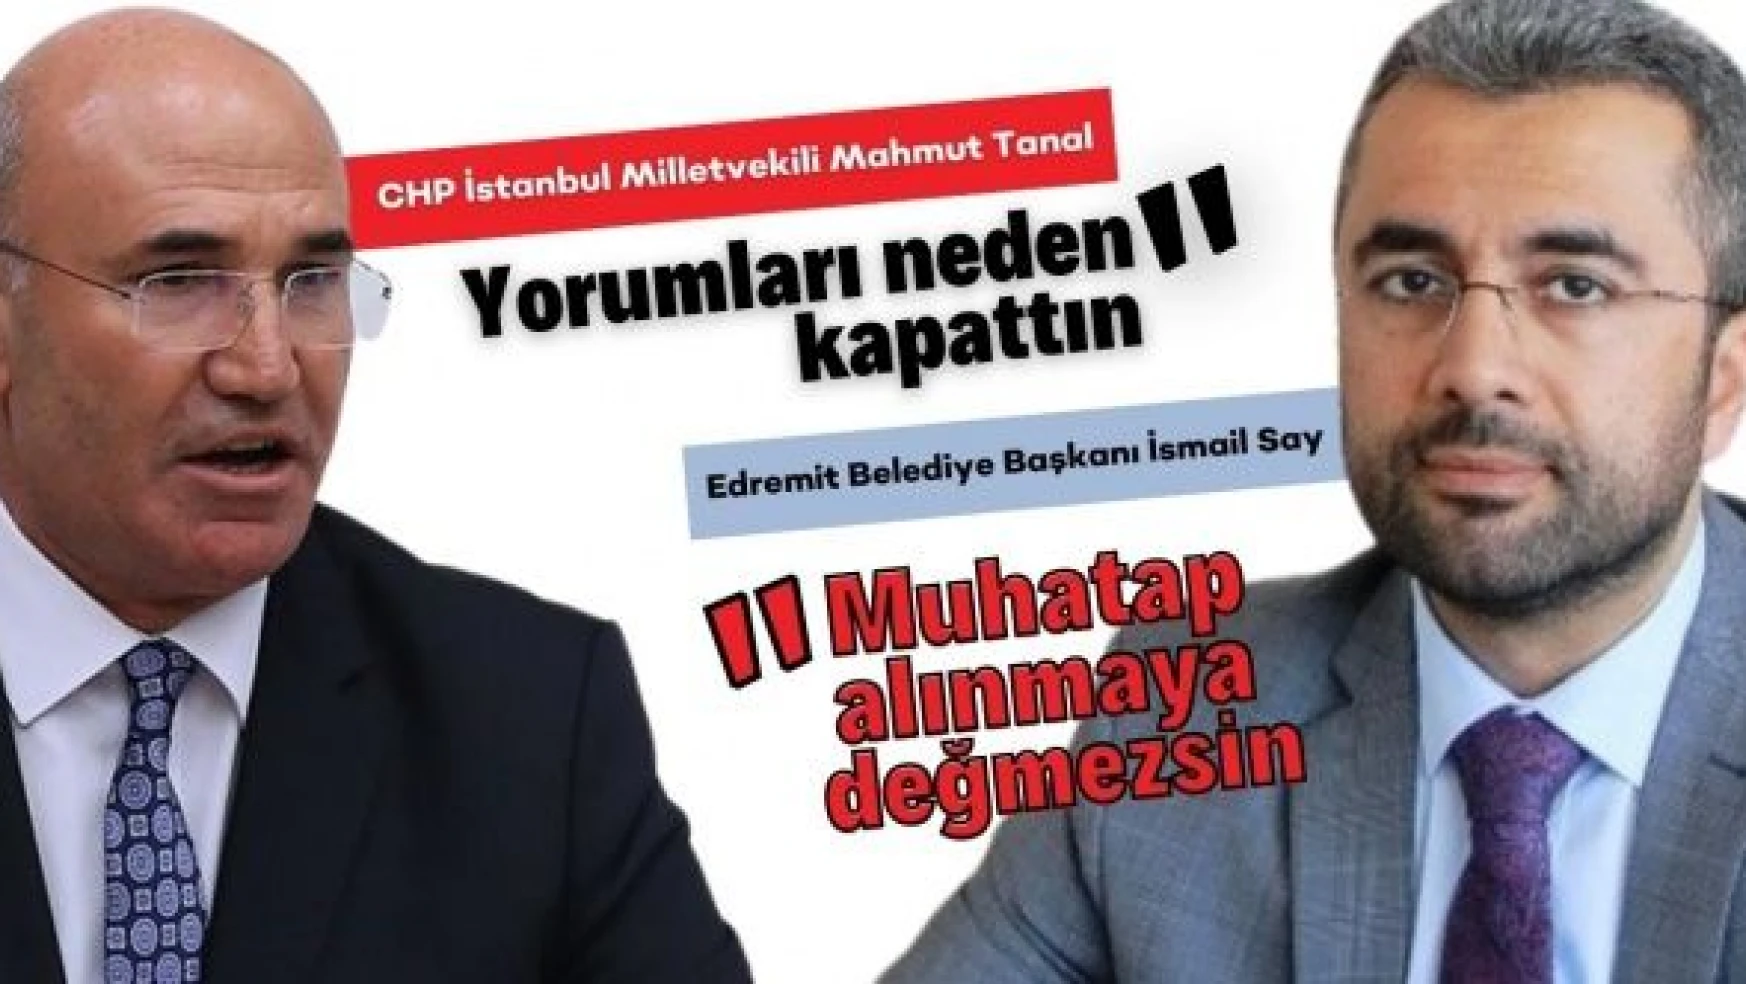 CHP'li Tanal ile AK Partili Belediye Başkanı İsmail Say arasındaki atışma sürüyor